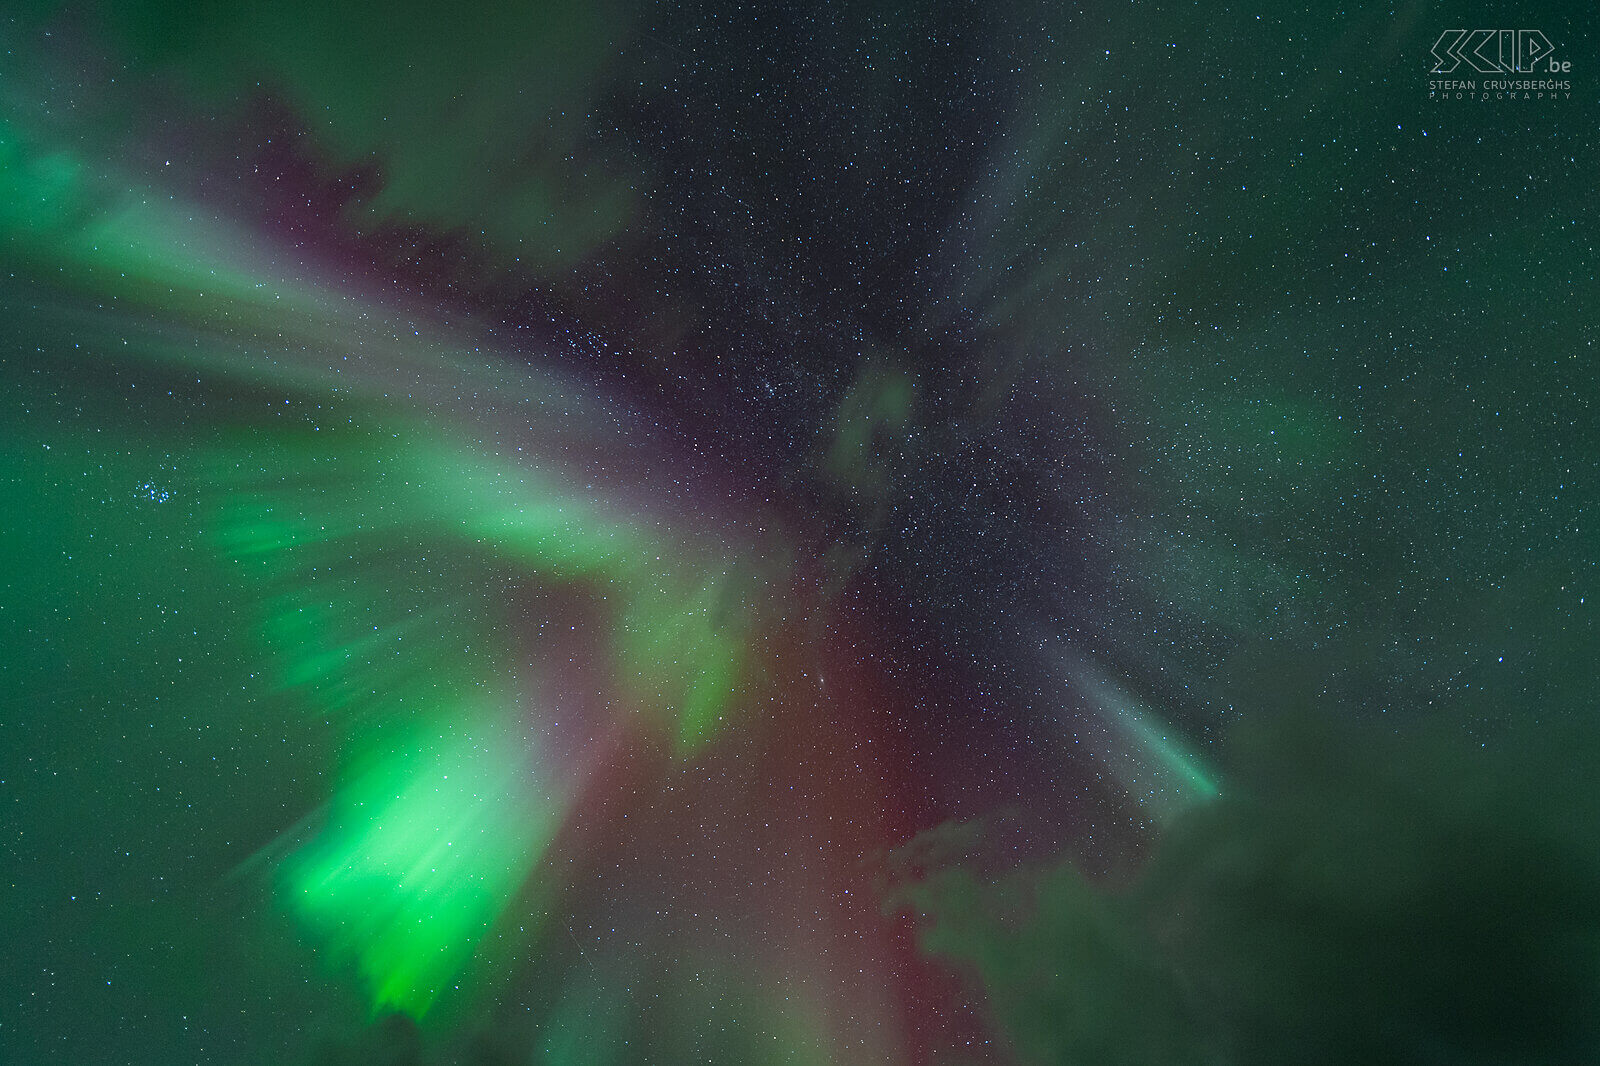 Oteren - Noorderlicht kroon Een van de meest indrukwekkende vormen van noorderlicht oftewel aurora borealis is wanneer een corona, of kroon, hoog in de hemel wordt gevormd. Het veranderde zo snel met felle groene en rode kleuren. Stefan Cruysberghs